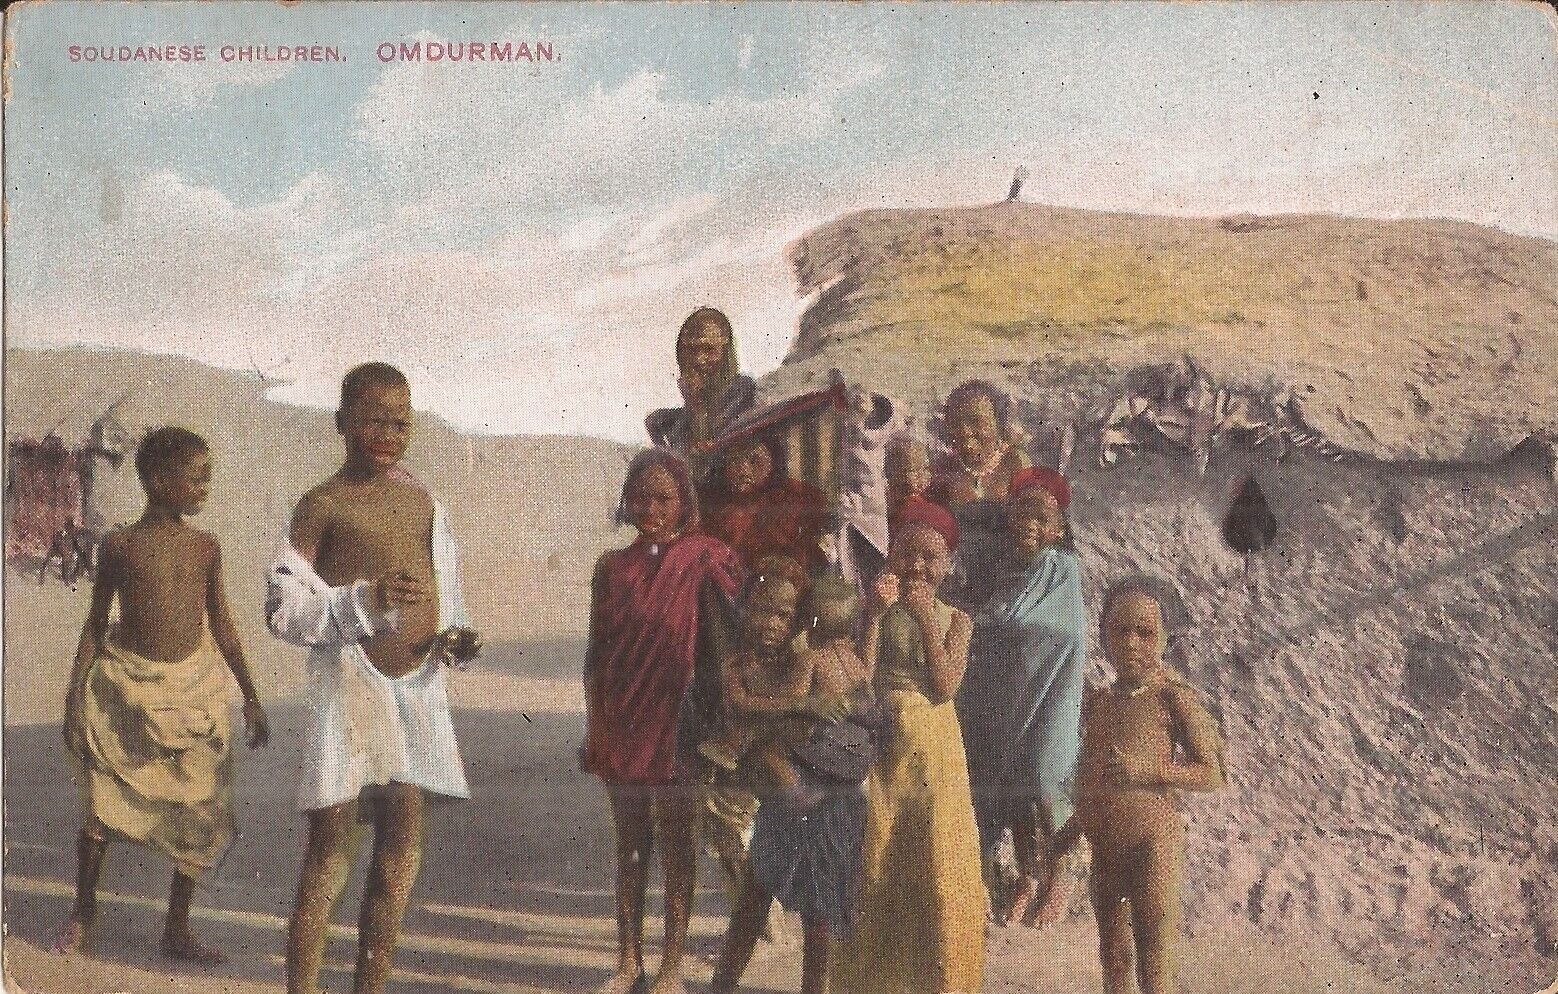 Omdurman, SUDAN - Sudanese Children